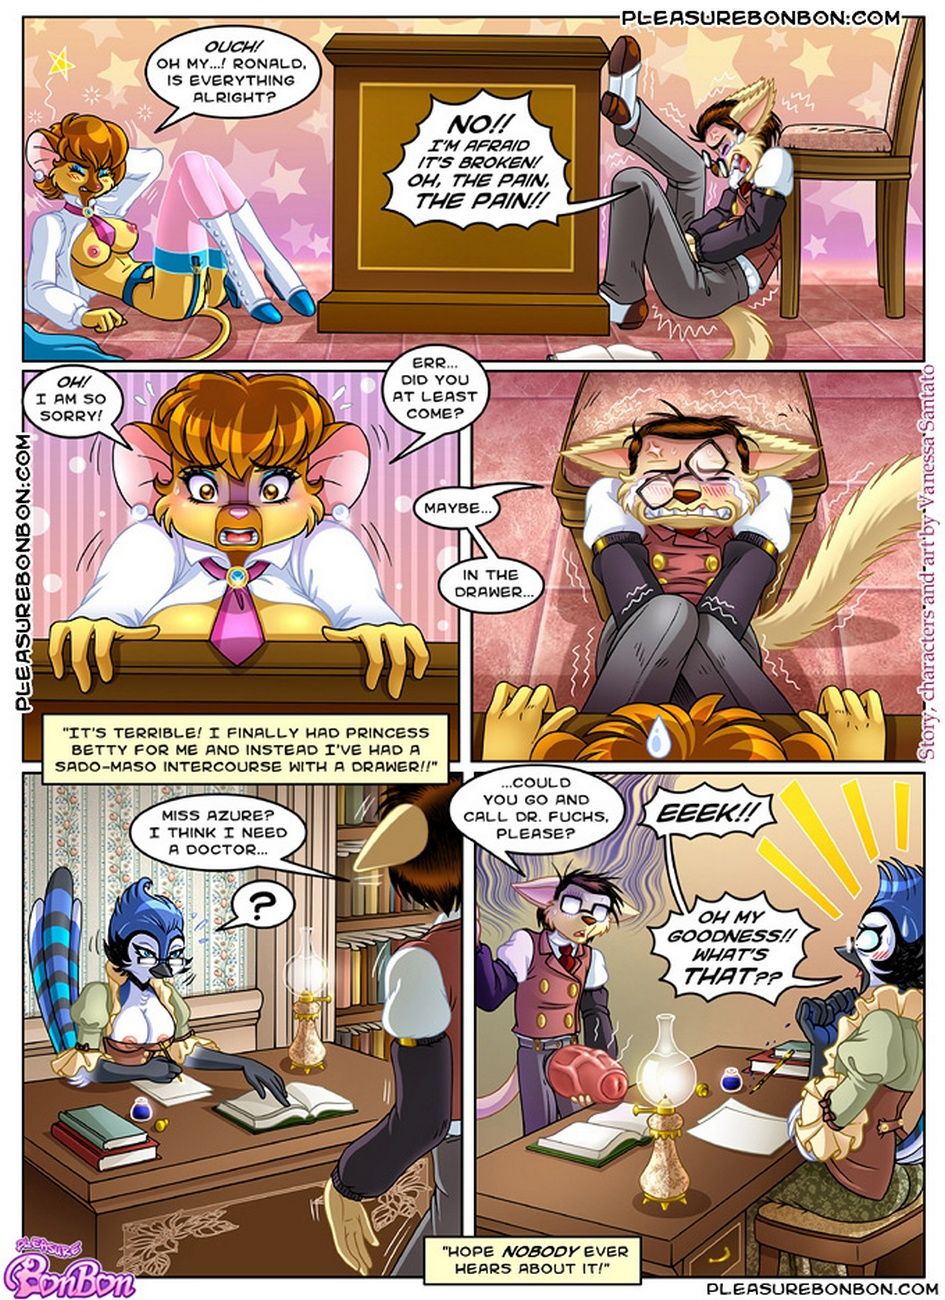 Pleasure Bon Bon 9 - Secret Agreements page 14